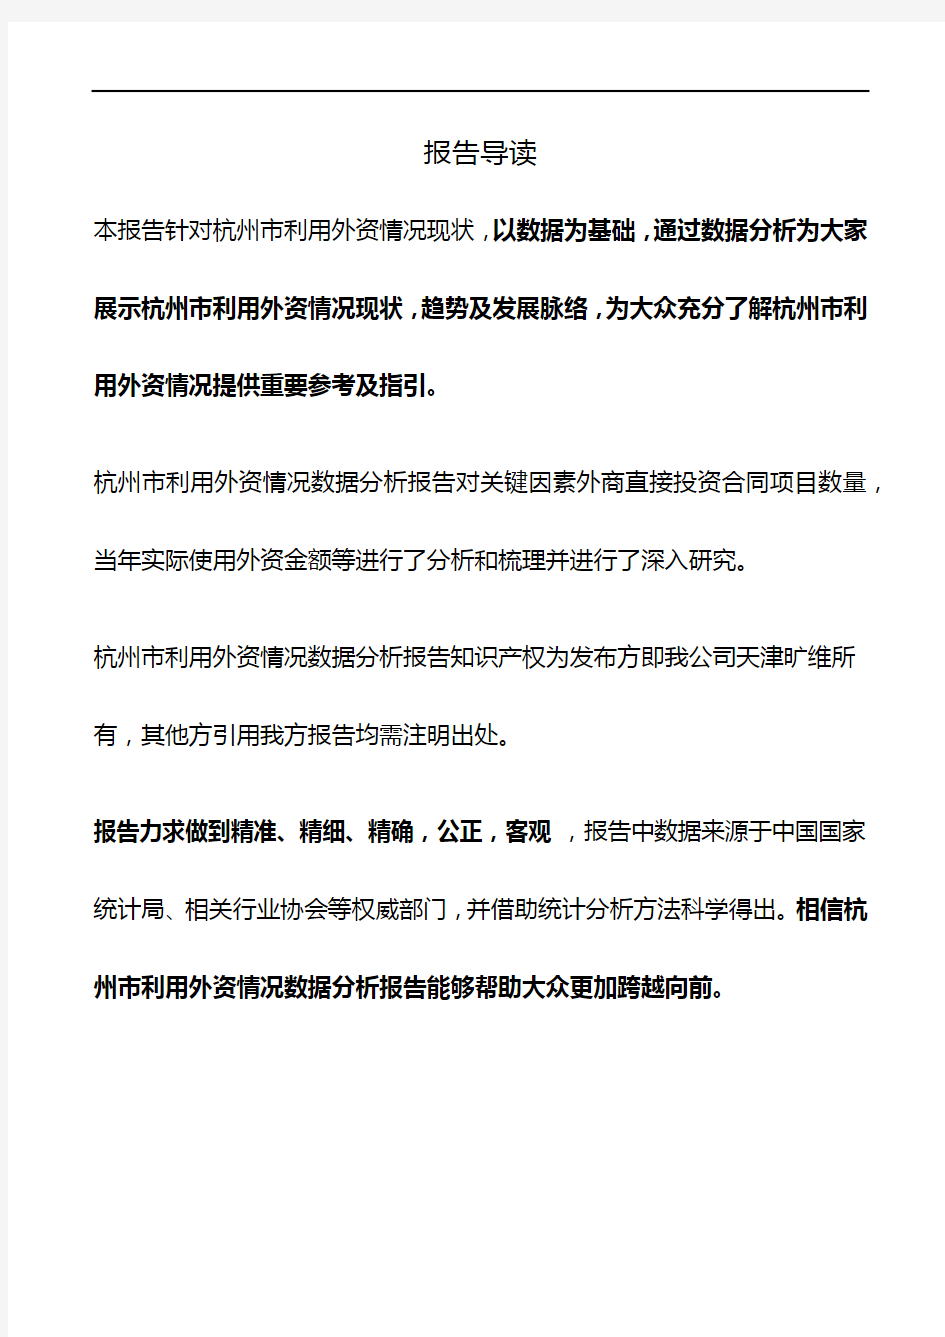 杭州市(全市)利用外资情况3年数据分析报告2019版